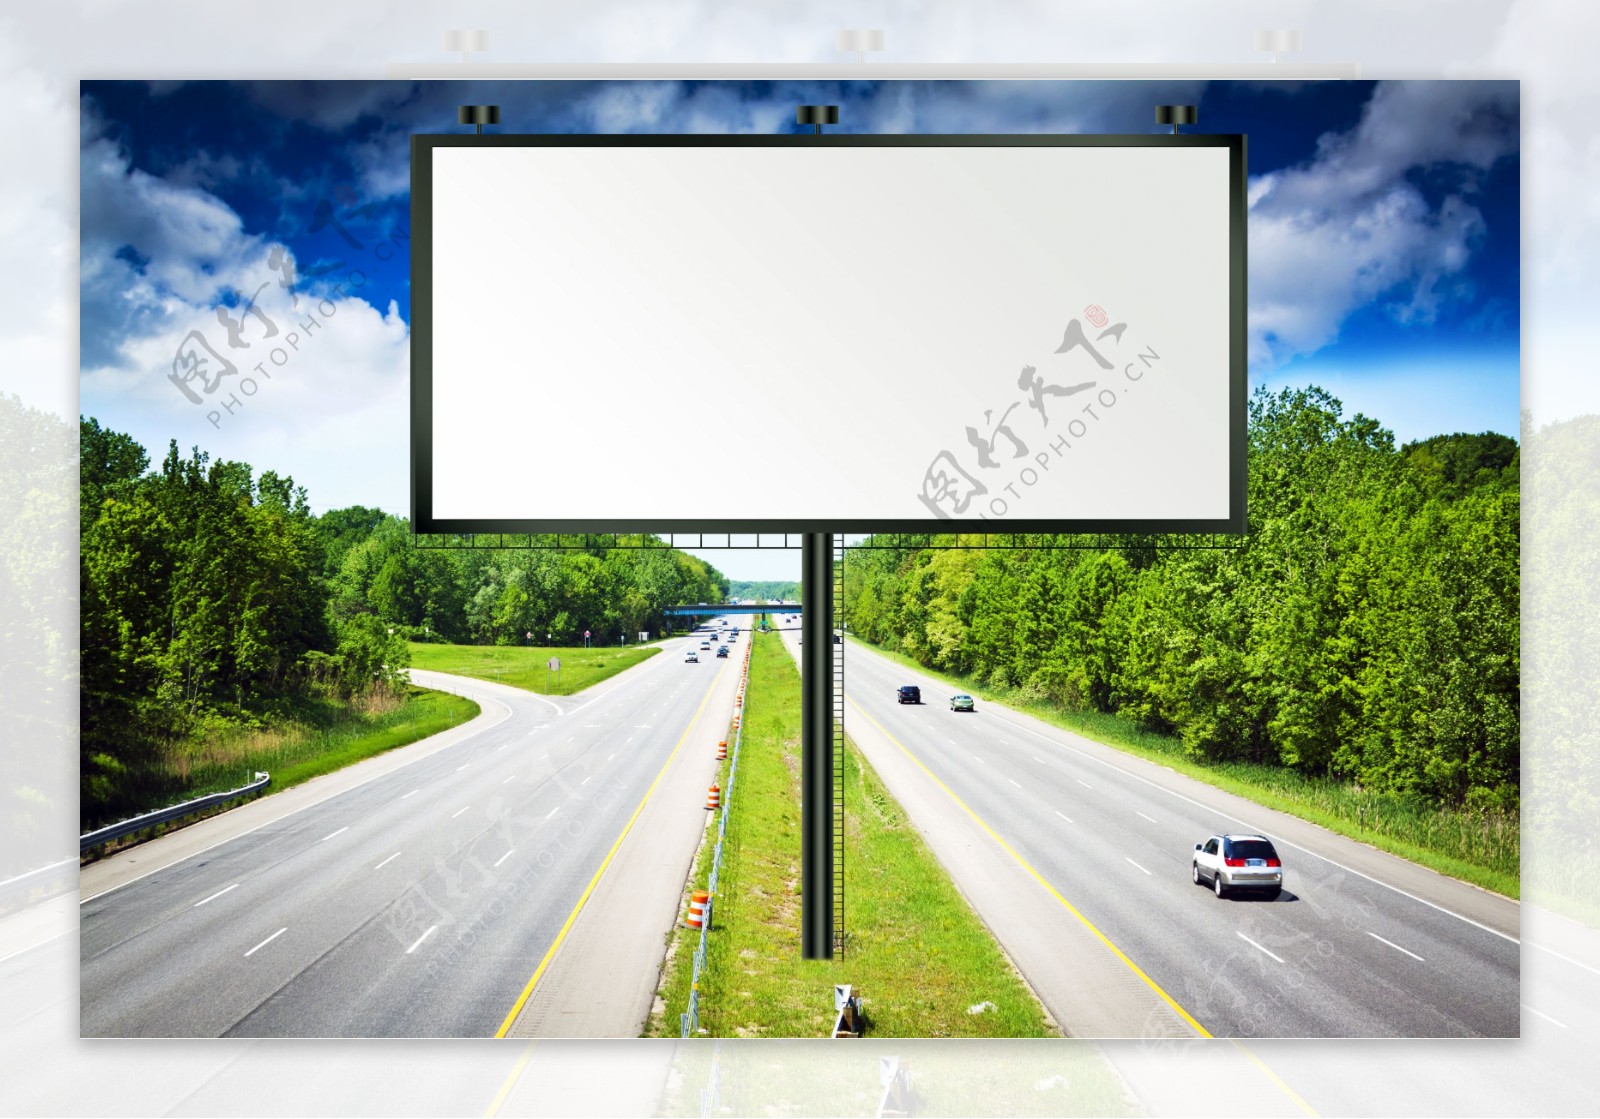 公路巨幅广告图片